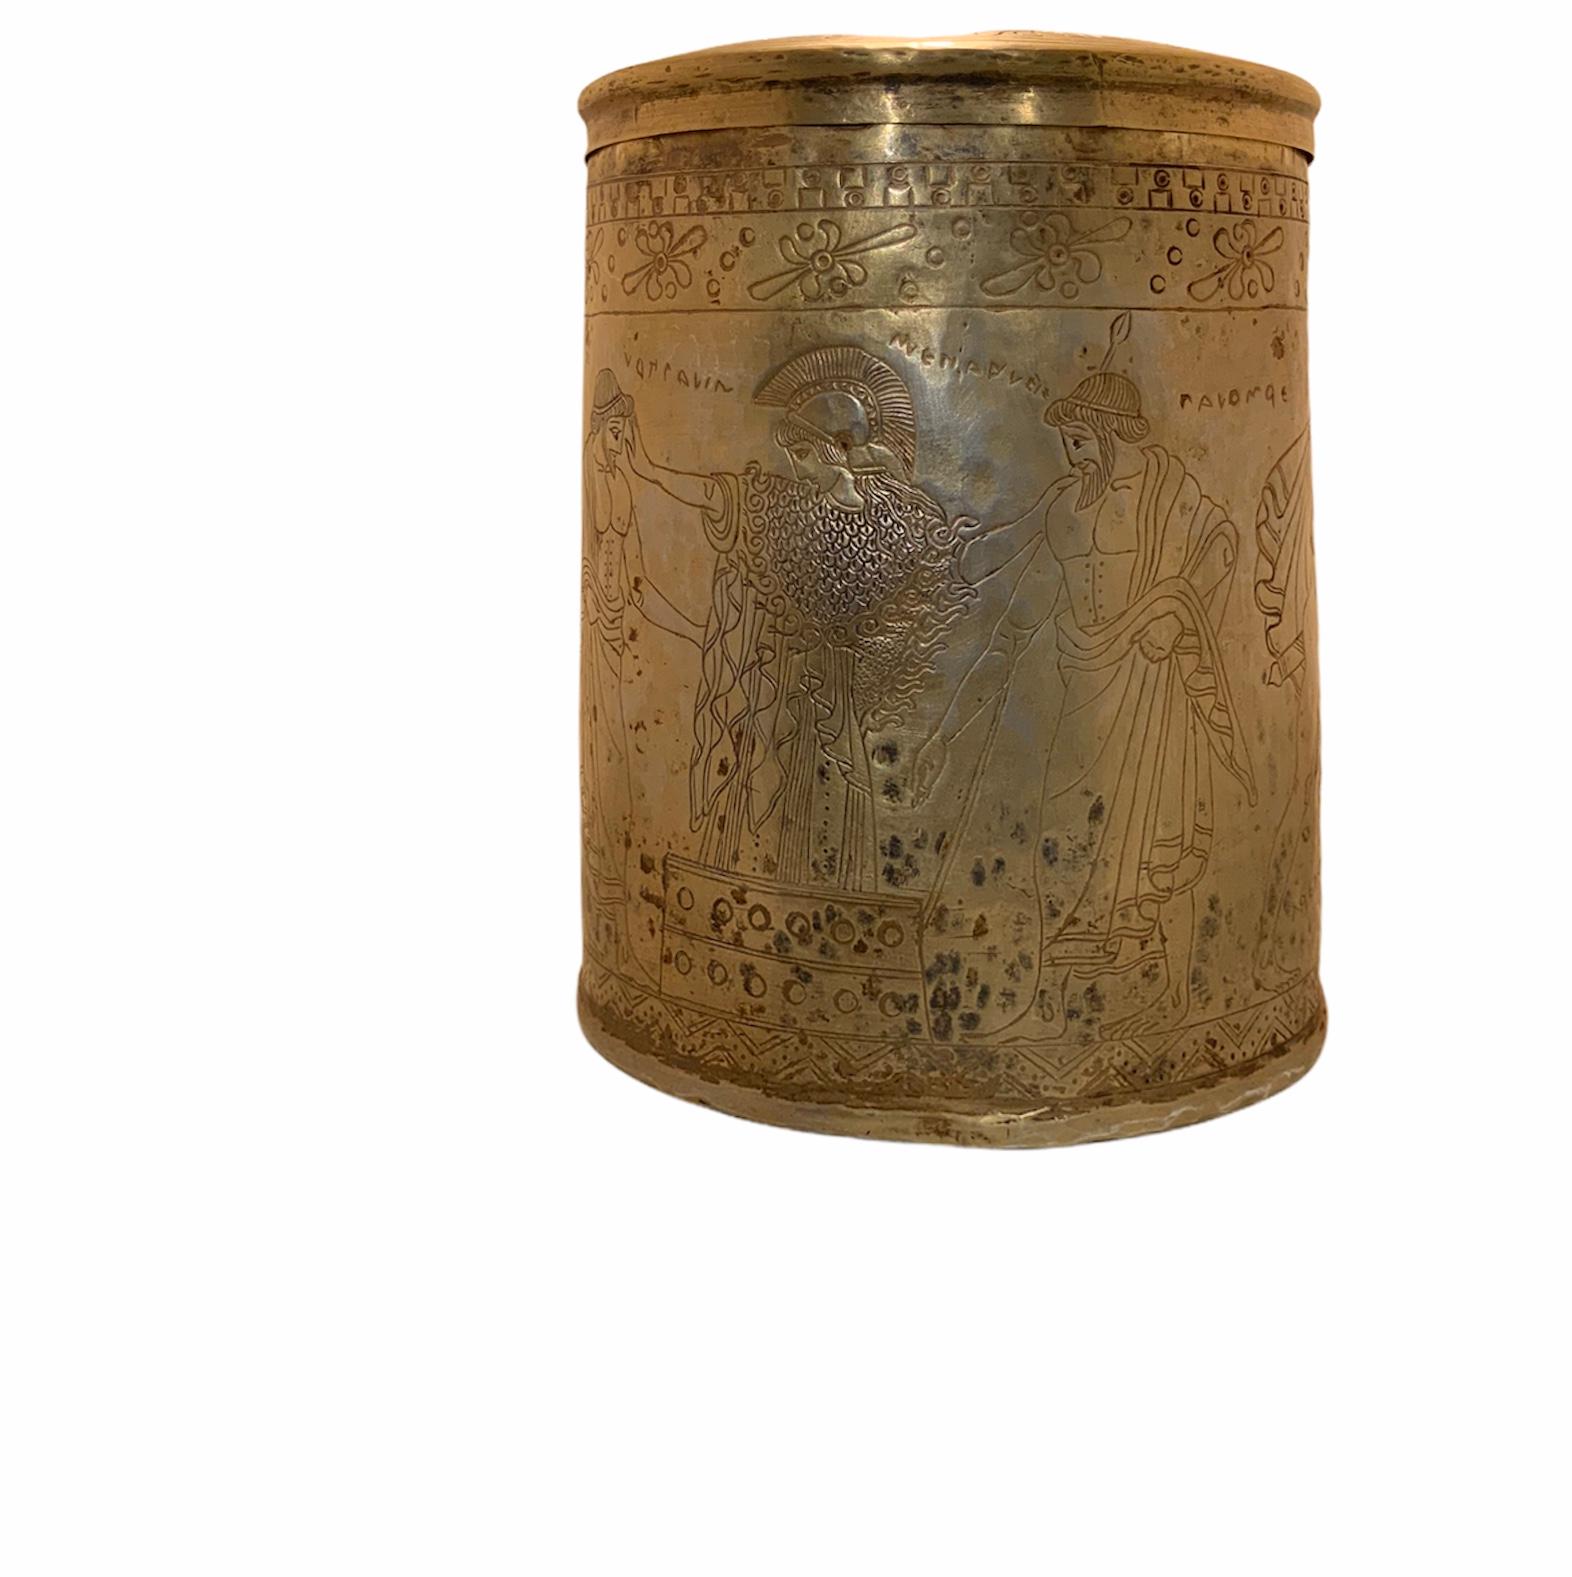 Il s'agit d'une grande Pyxis de style grec en métal doré gravé et ciselé (un récipient/boîte cylindrique avec un couvercle qui peut être en bois, ivoire ou métal). Dans l'Antiquité, il était surtout utilisé par les femmes pour stocker et transporter